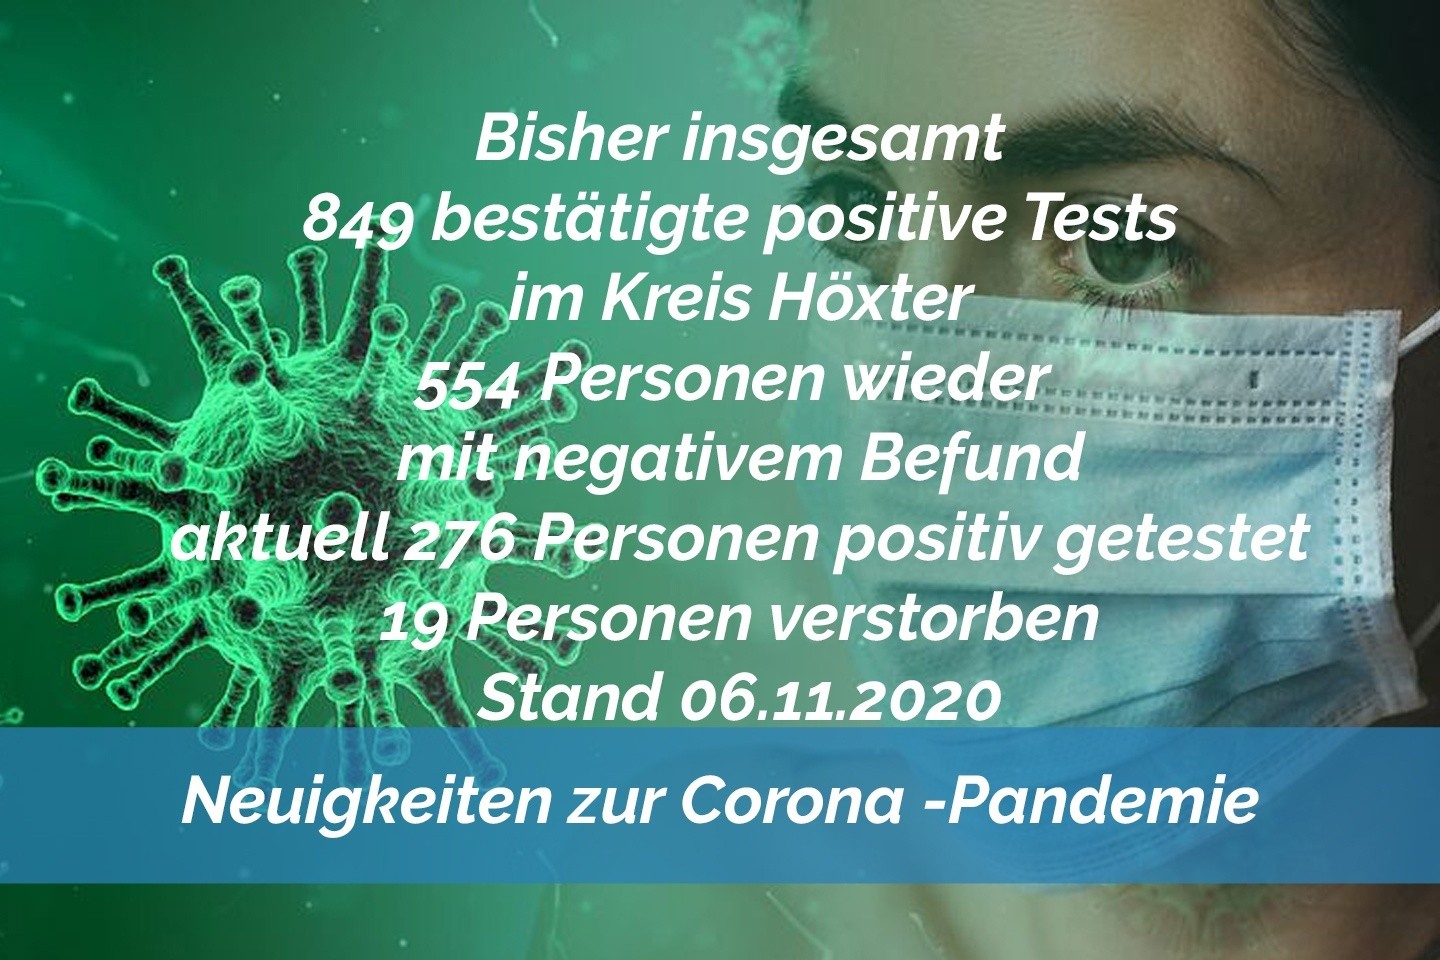 Update 06. November: 42 weitere amtlich positive Tests im Kreis Höxter